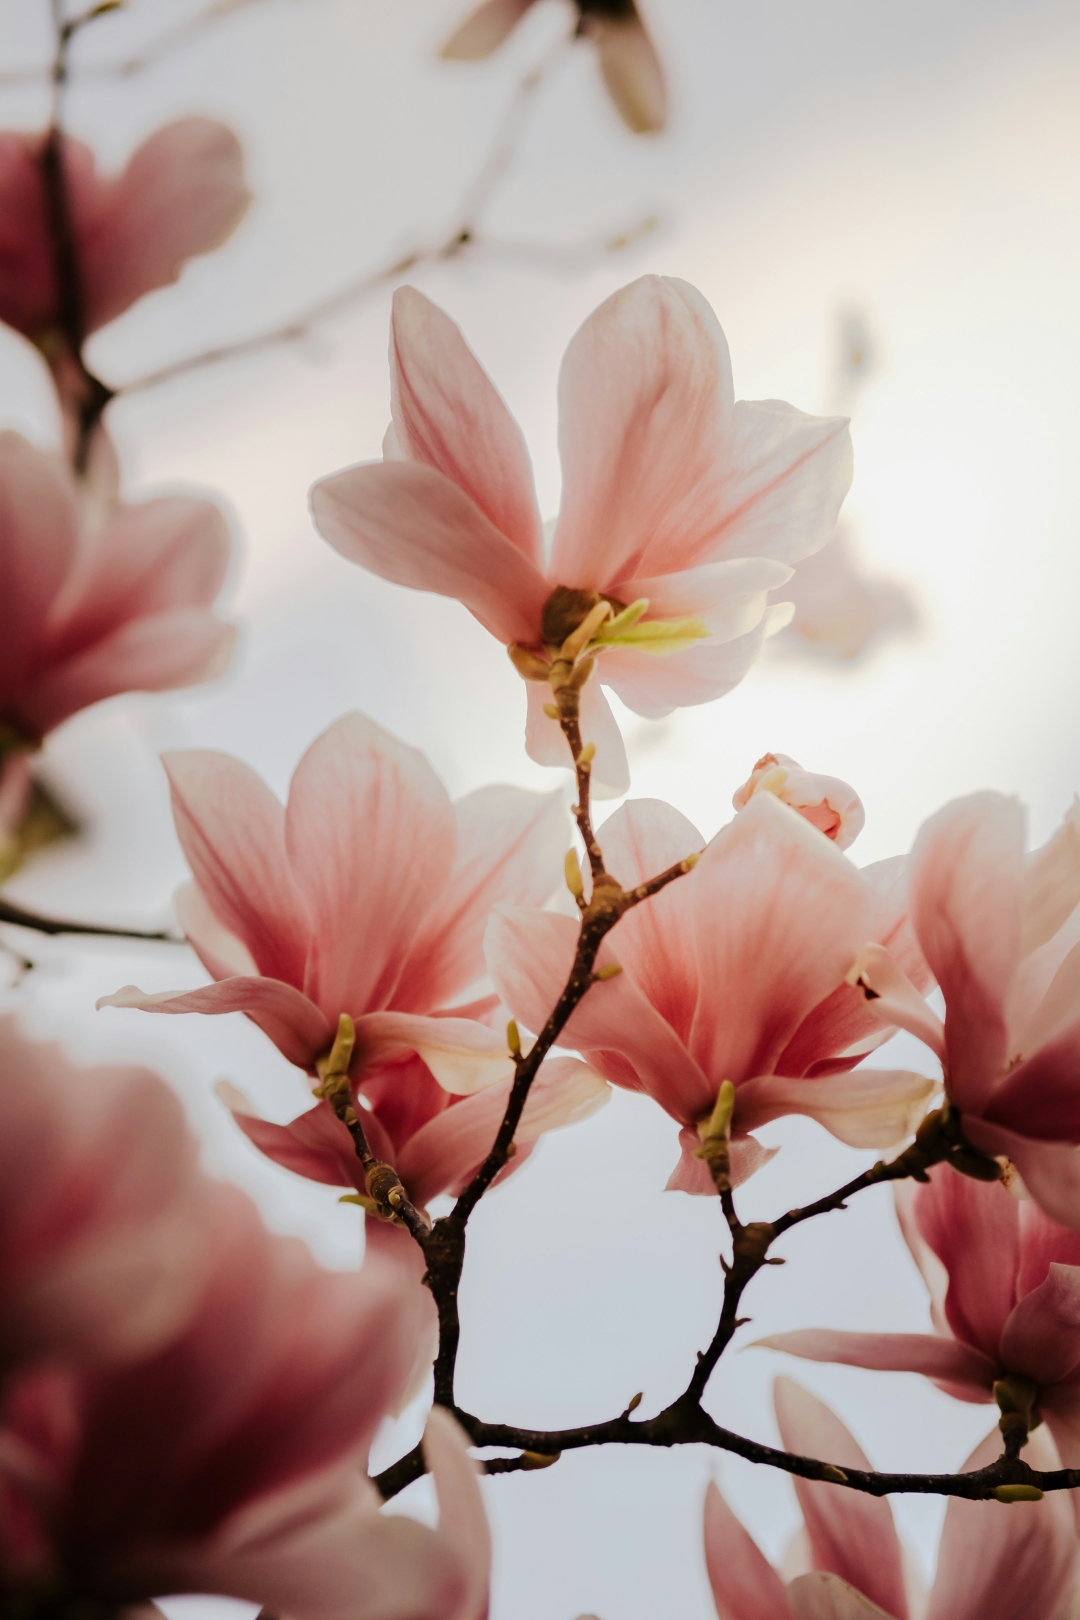 Magnolija je ena izmed najstarejših rož. Njene cvetne liste lahko uporabimo za pripravo okusnega sirupa